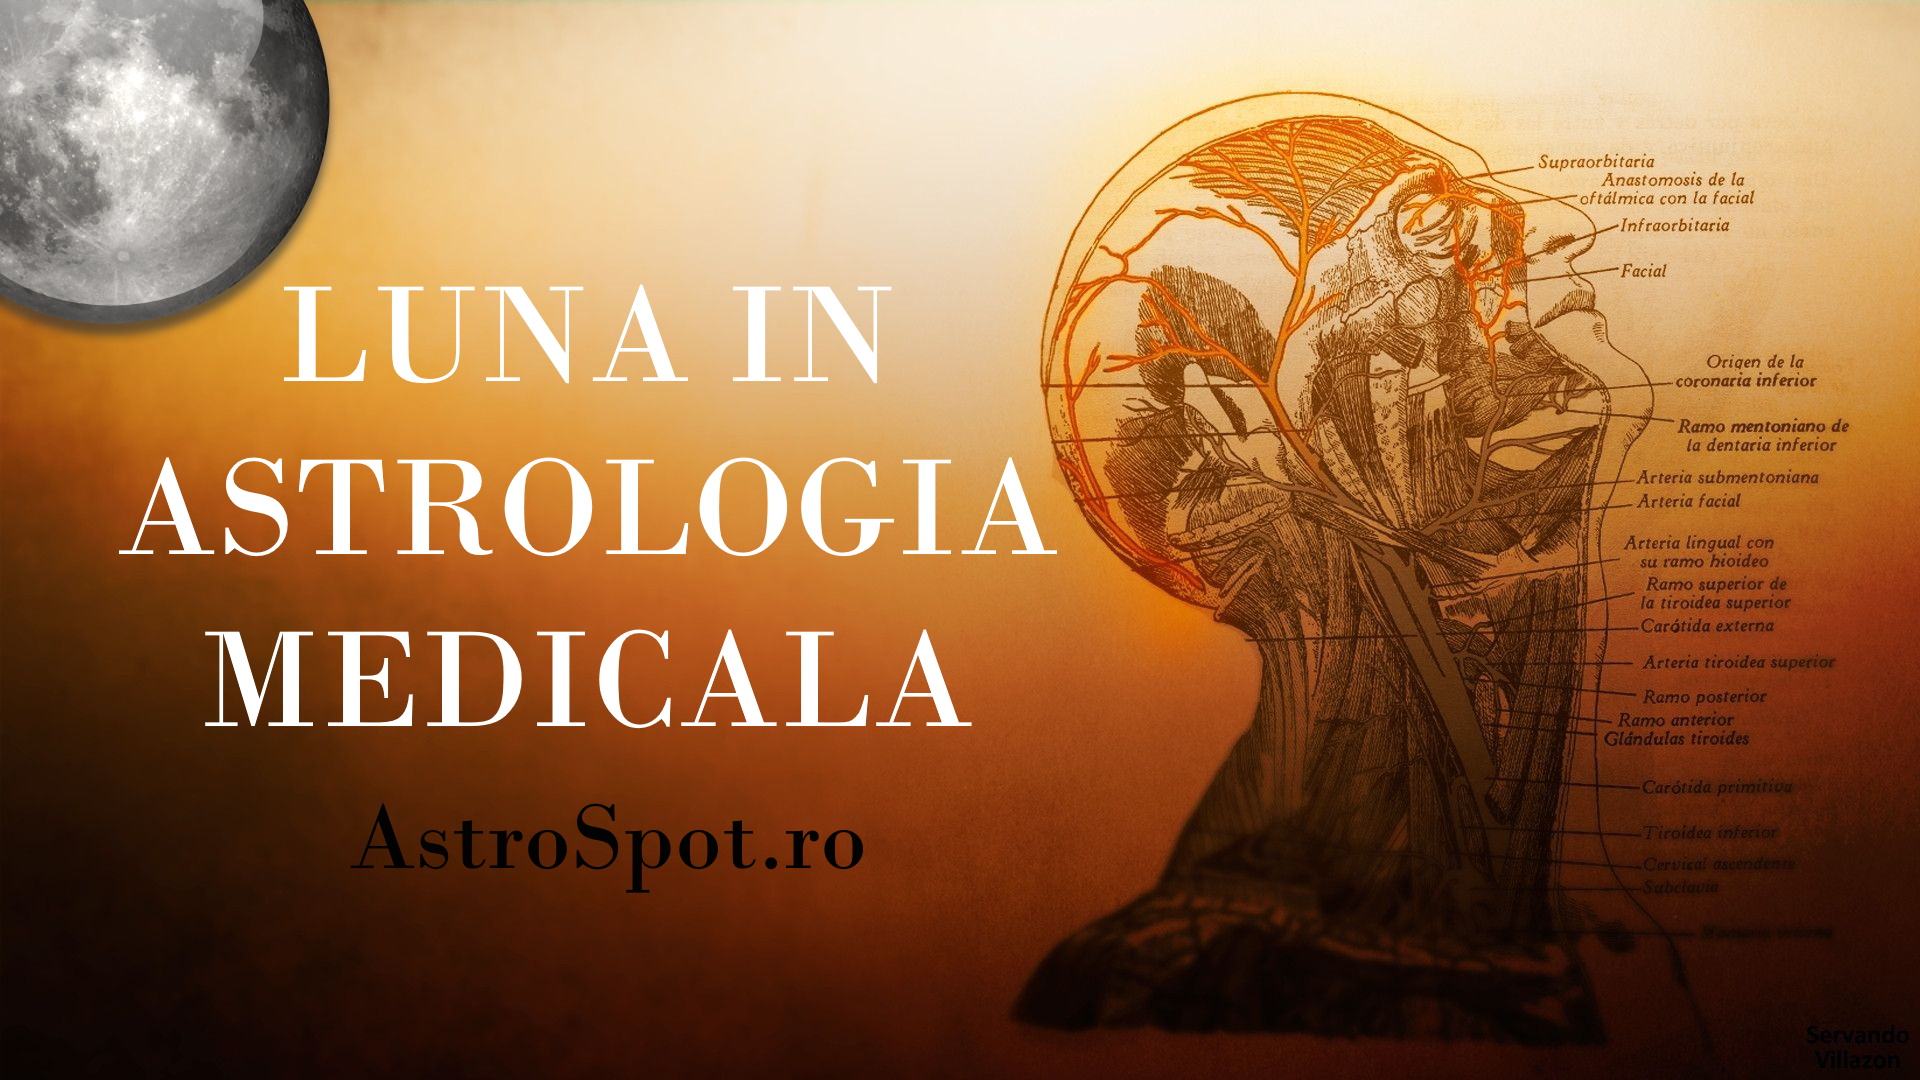 Luna in Astrologia Medicala